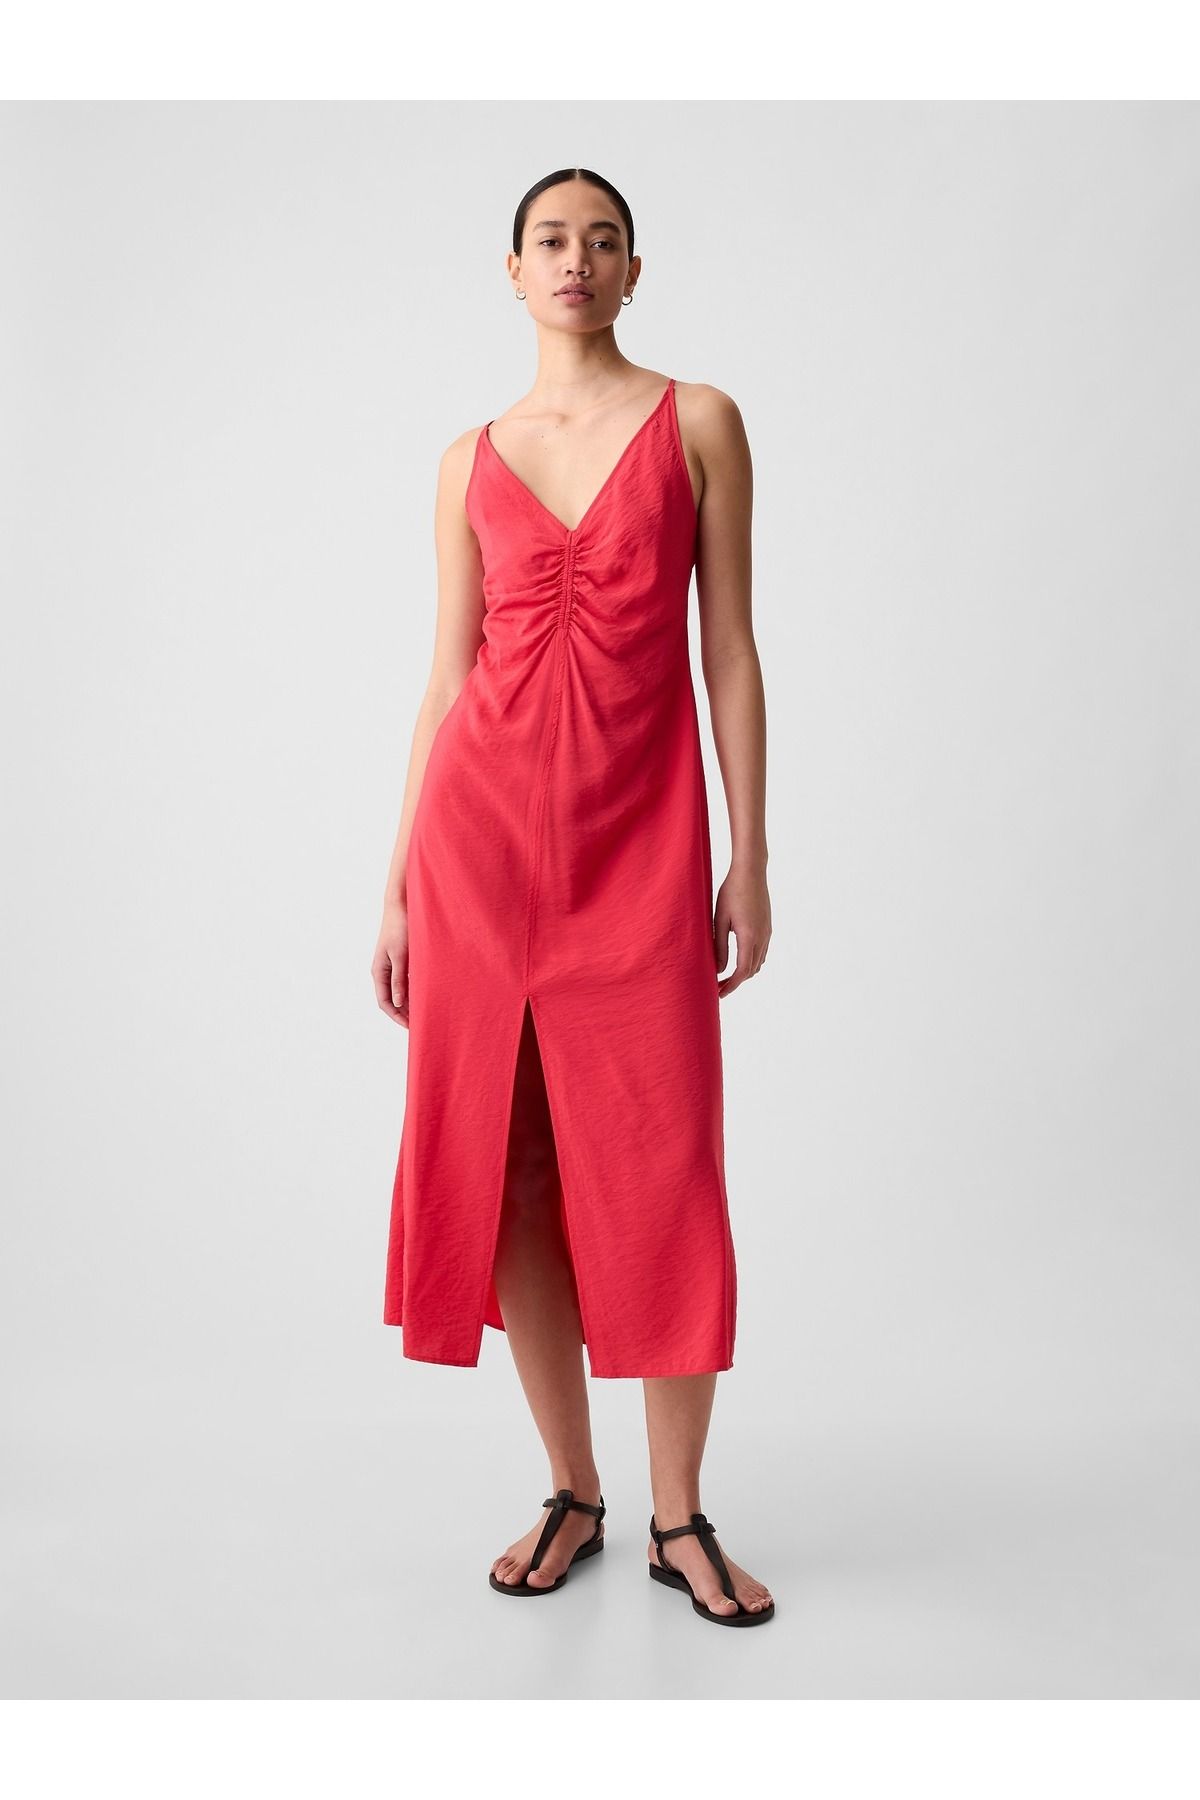 GAP Kadın Kırmızı Yırtmaçlı Askılı Midi Elbise